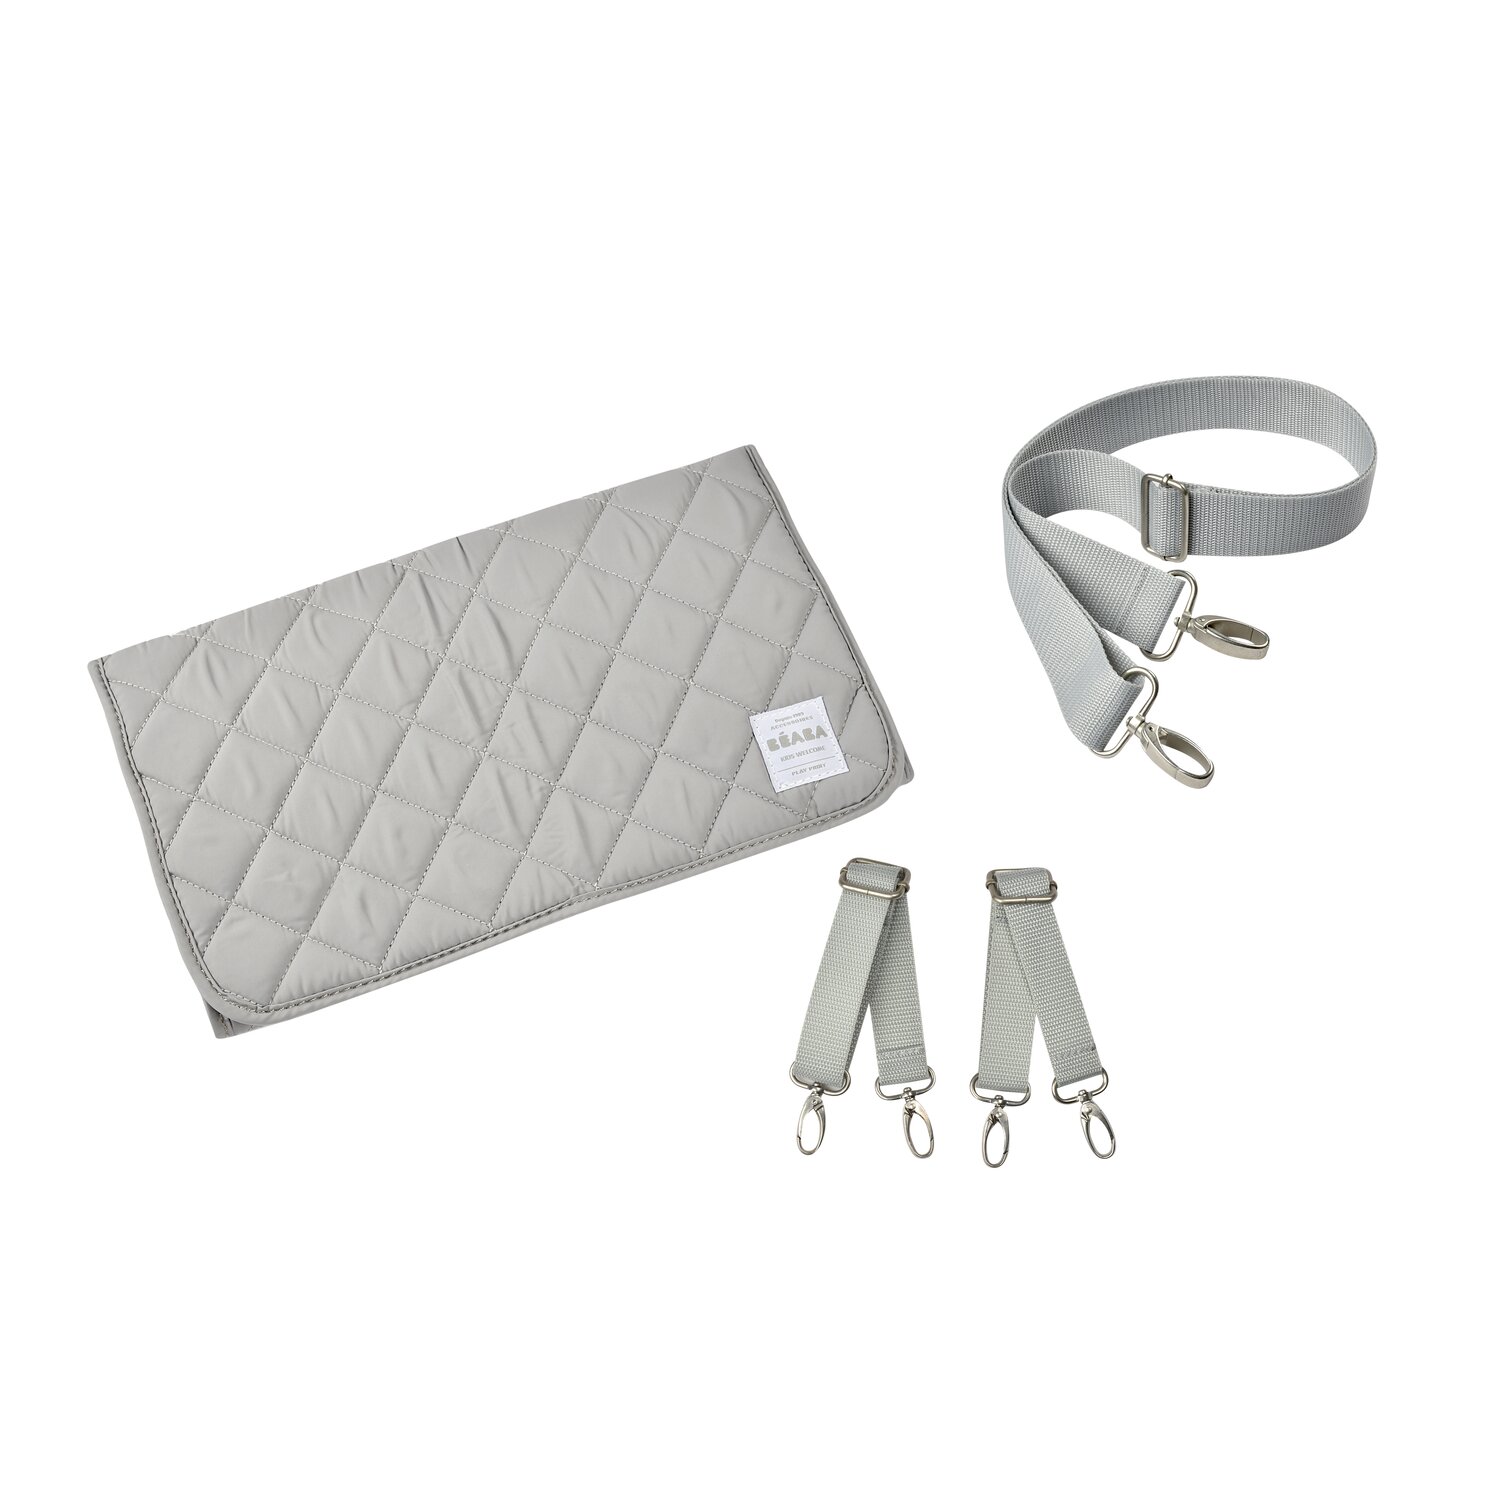 Kit accessoires - Sac light grey : Matelas amovible, attaches poussette, bandoulière amovible Béaba